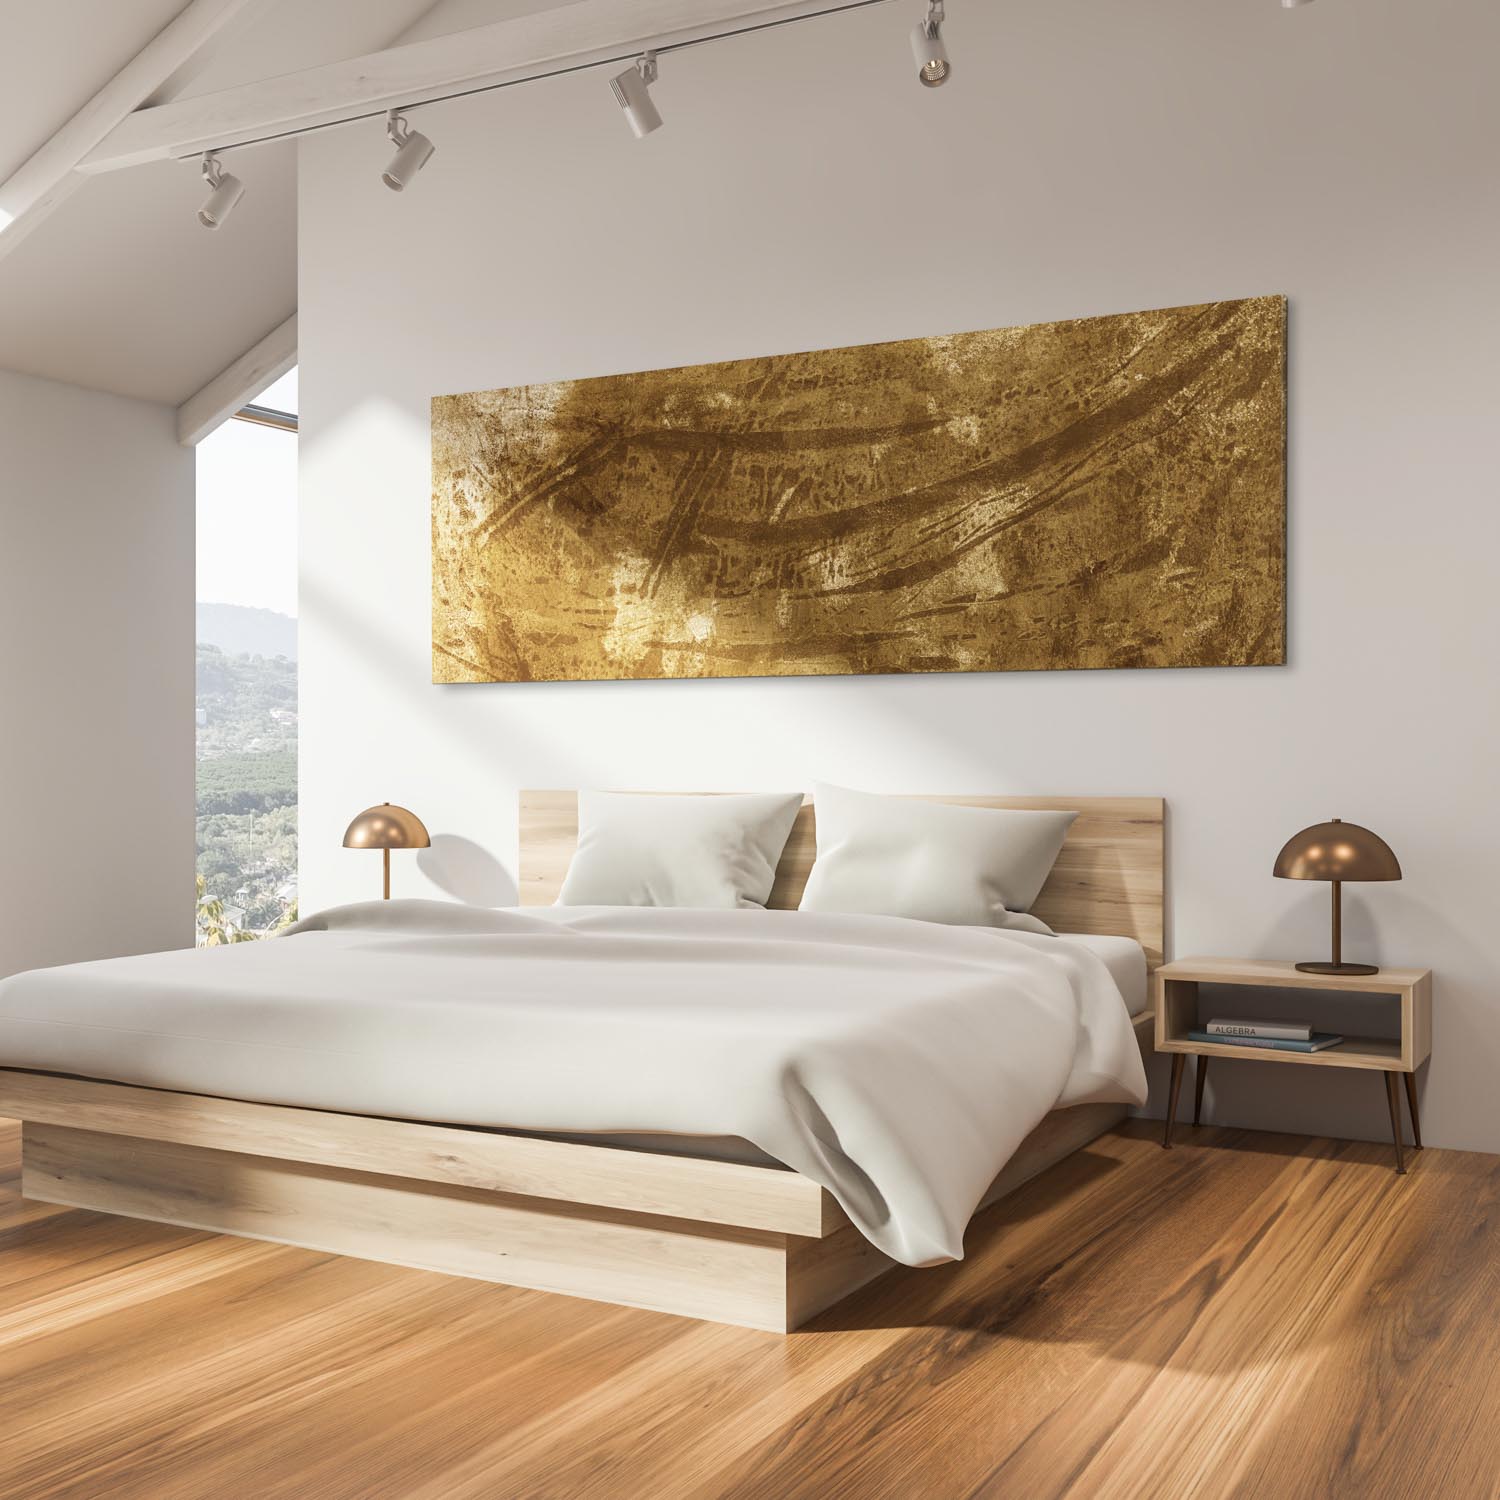 Edelstock XXL Wandbild komplett in Gold mit goldenen Streifen hängt in modernem Schlafzimmer über dem Bett